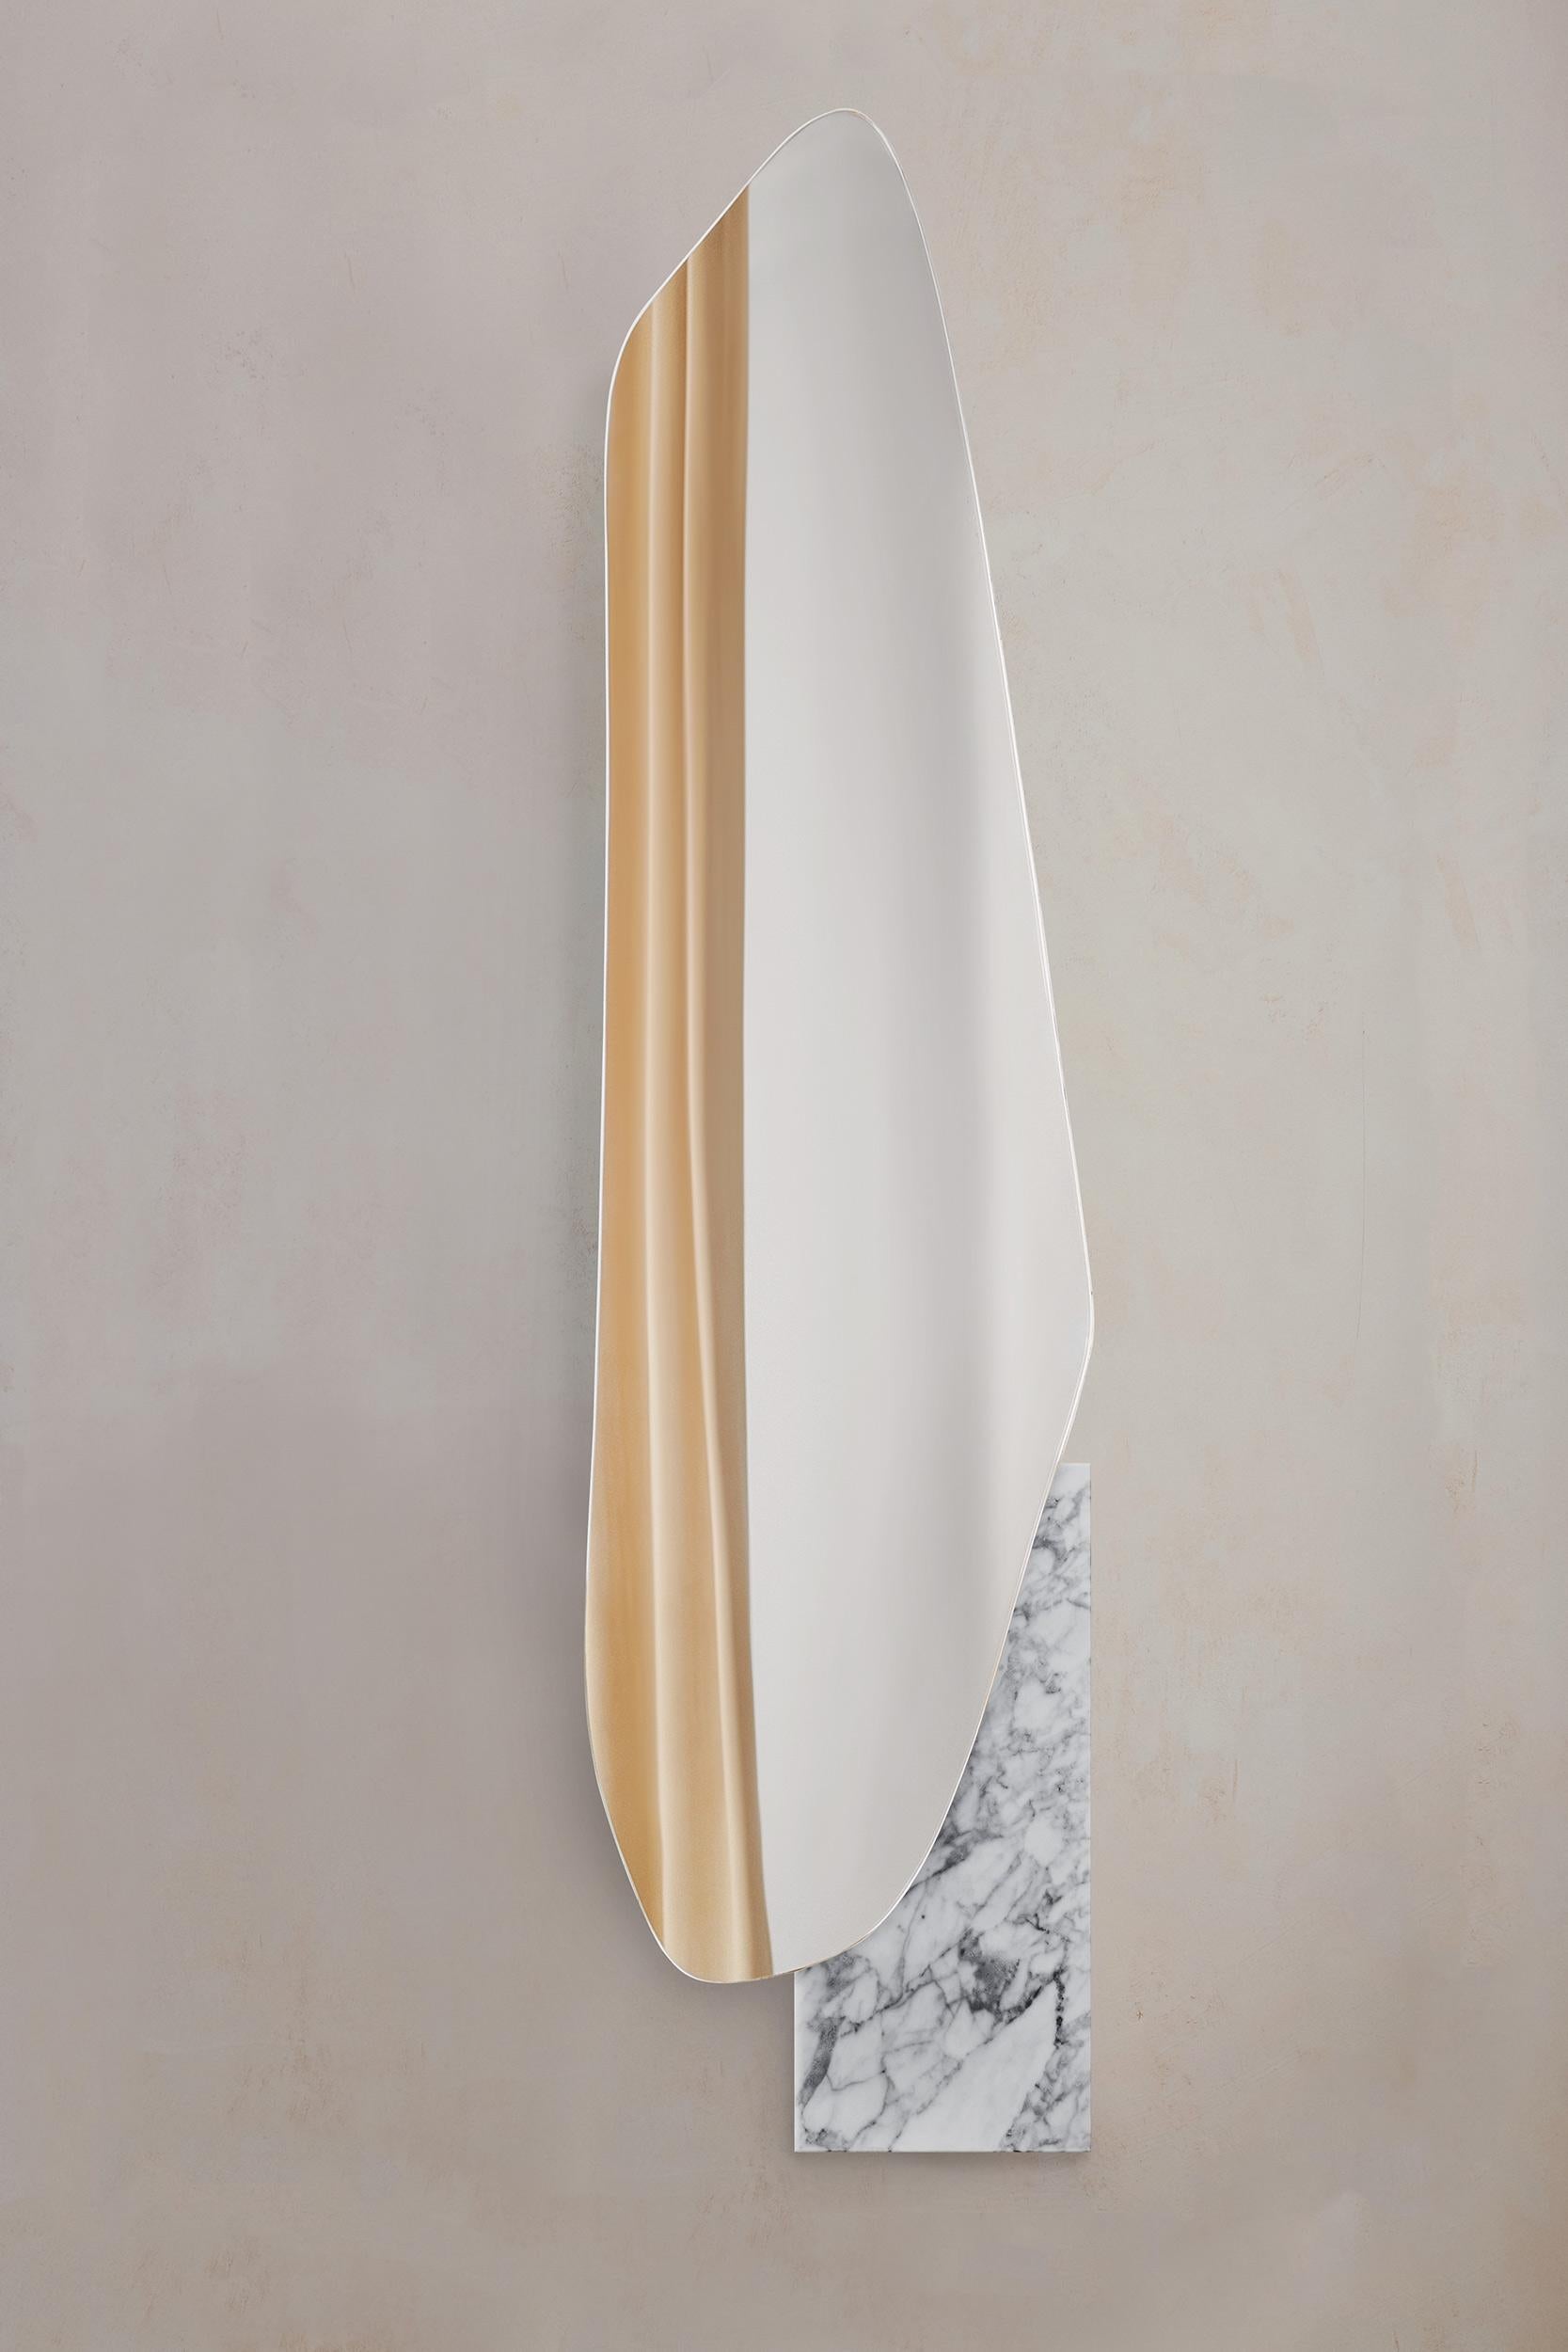 Zeitgenössischer Lake-Wandspiegel von NOOM
Gestalter: Maryna Dague & Nathan Baraness

Das Modell auf dem Bild:
Nummer 2
Sockel aus weißem Marmor statuario

